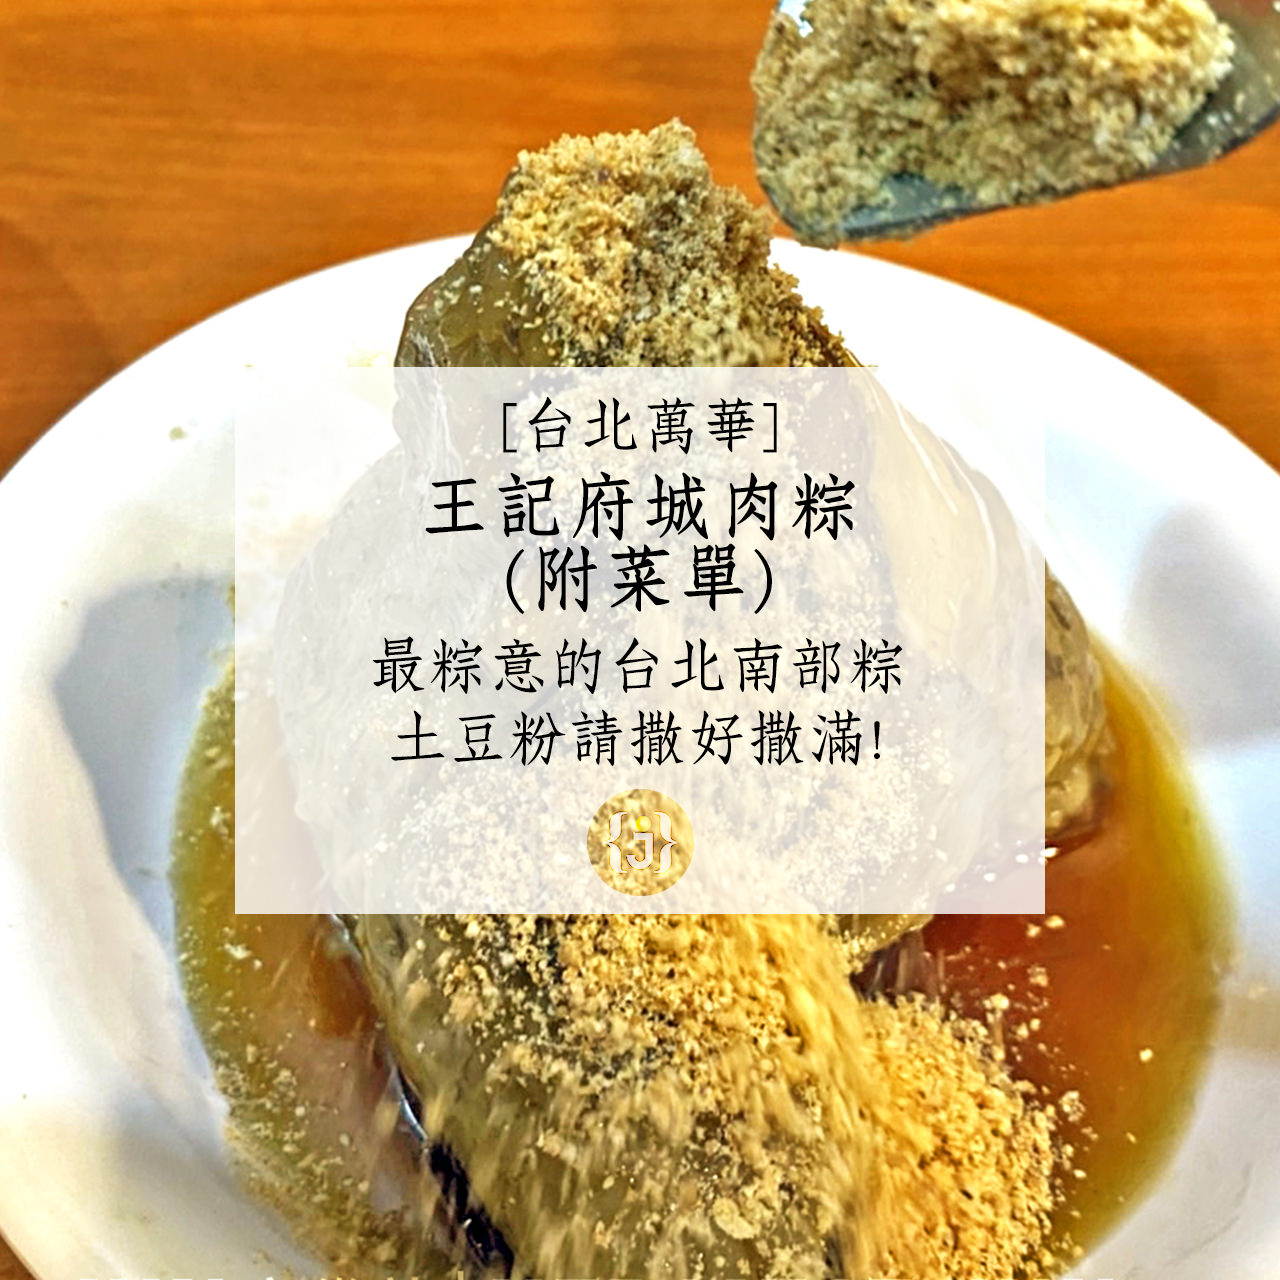 【台北萬華】王記府城肉粽附菜單最粽意的台北南部粽 土豆粉請撒好撒滿 1